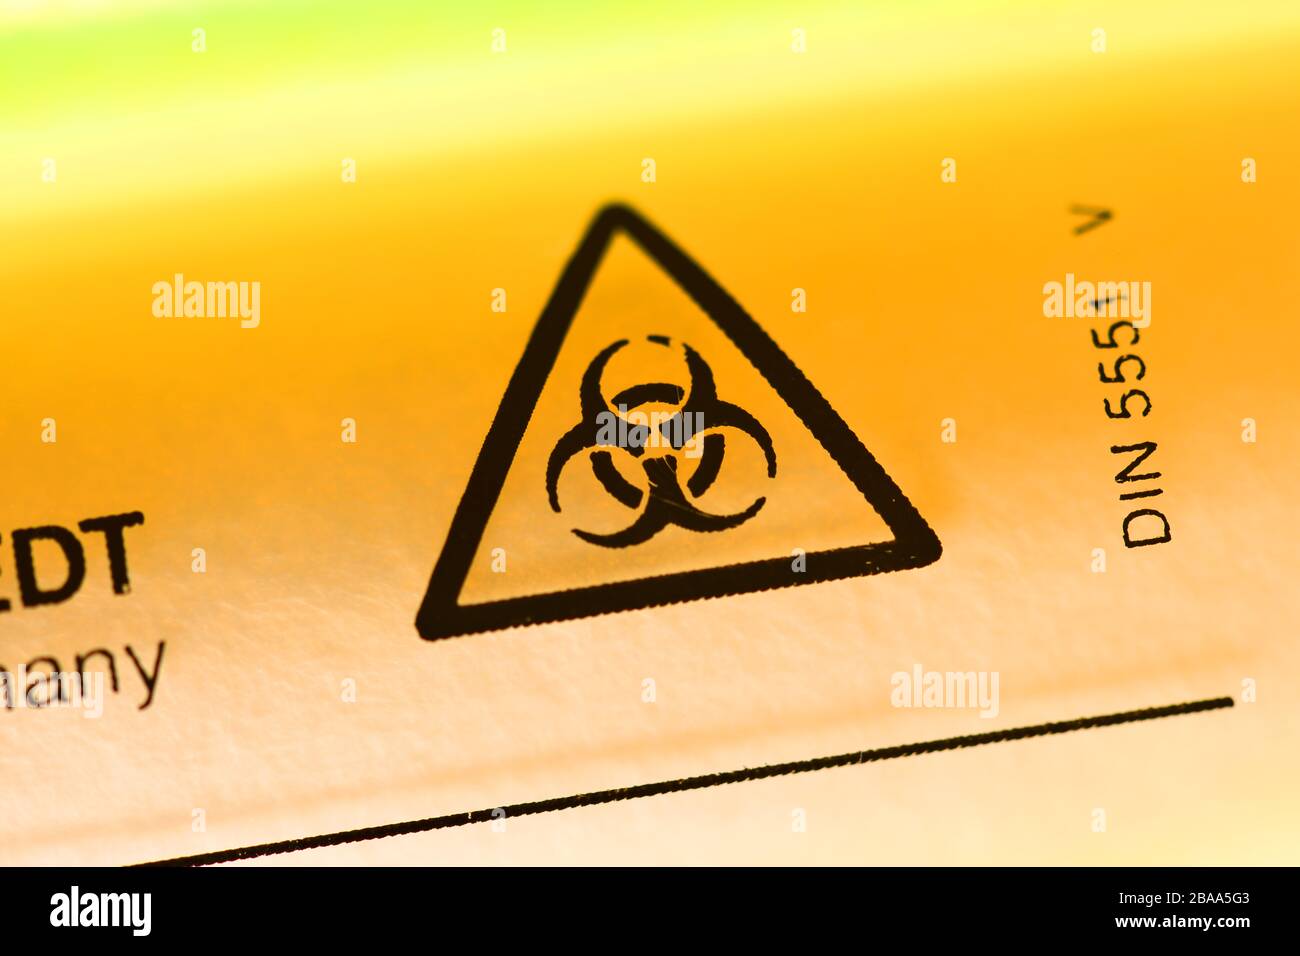 Biologie signes de danger sur un tube de déduction, photo symbolique Coronavirus, Biogefährdungszeichen auf einem Abstrich-Röhrchen, Symbolfoto Coronavirus Banque D'Images